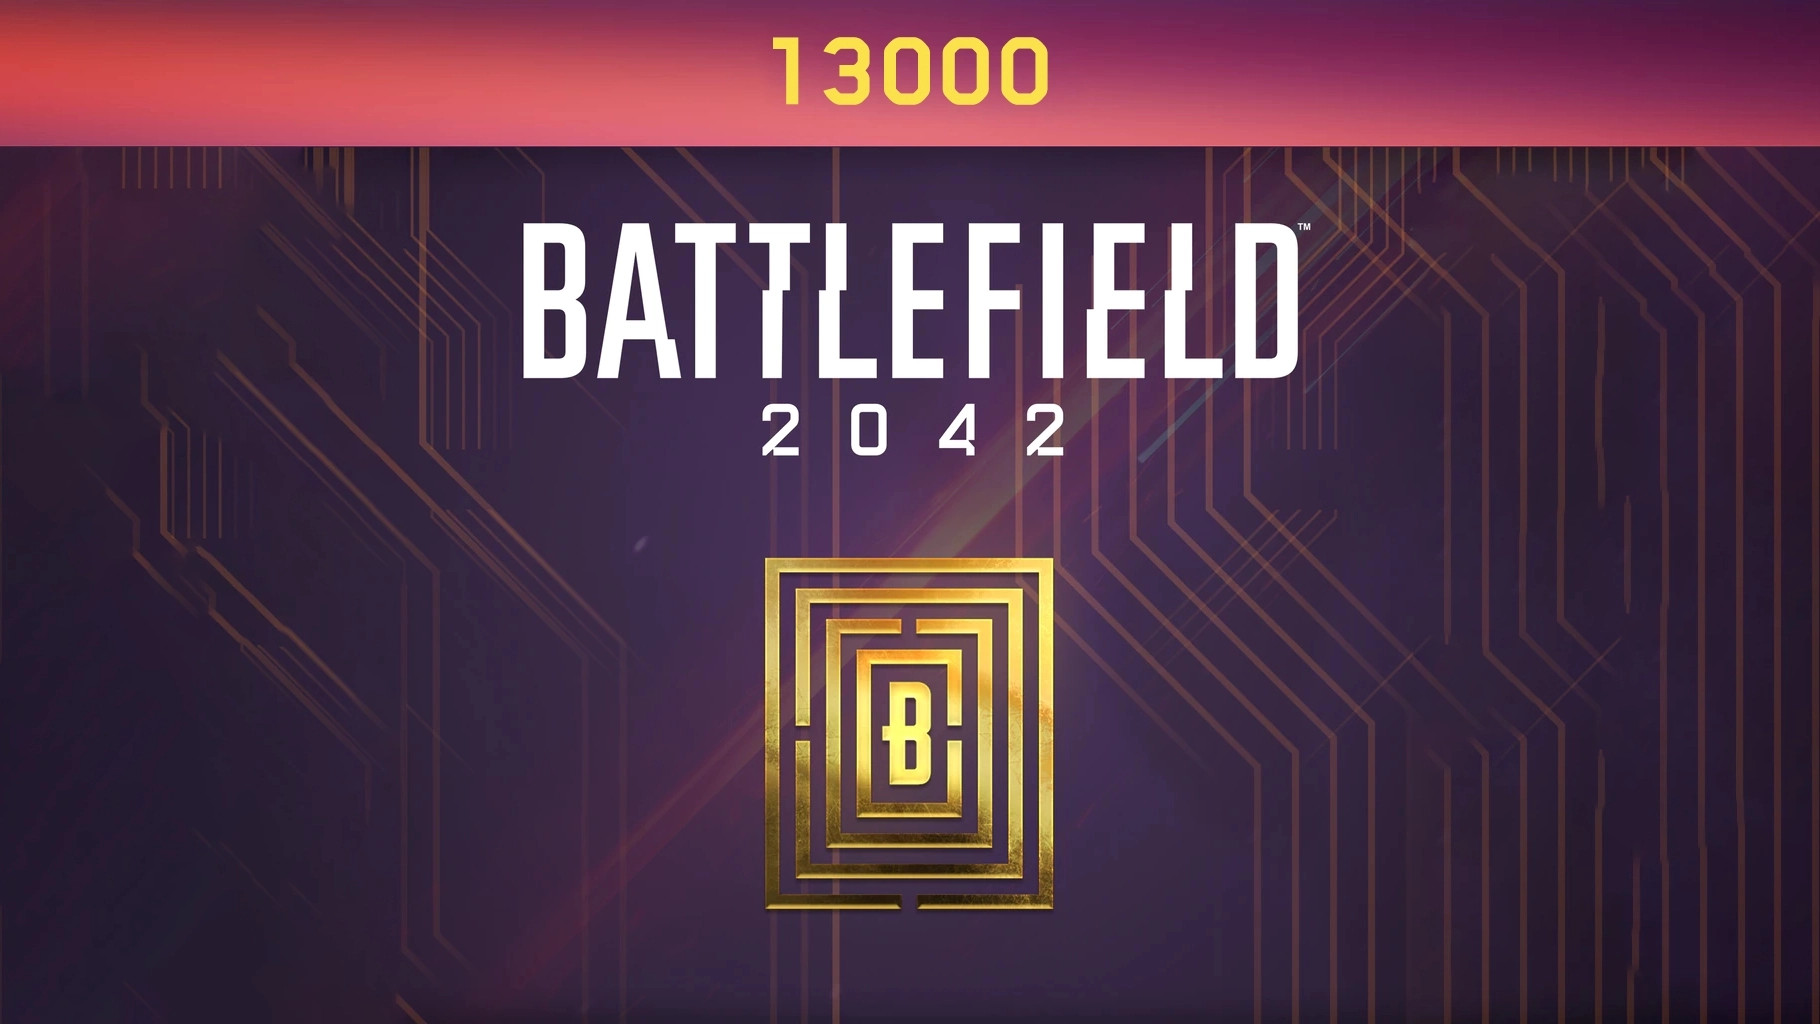 Battlefield 2042 - 13000 BFC Balance XBOX One / Xbox Series X|S CD Key $96.6